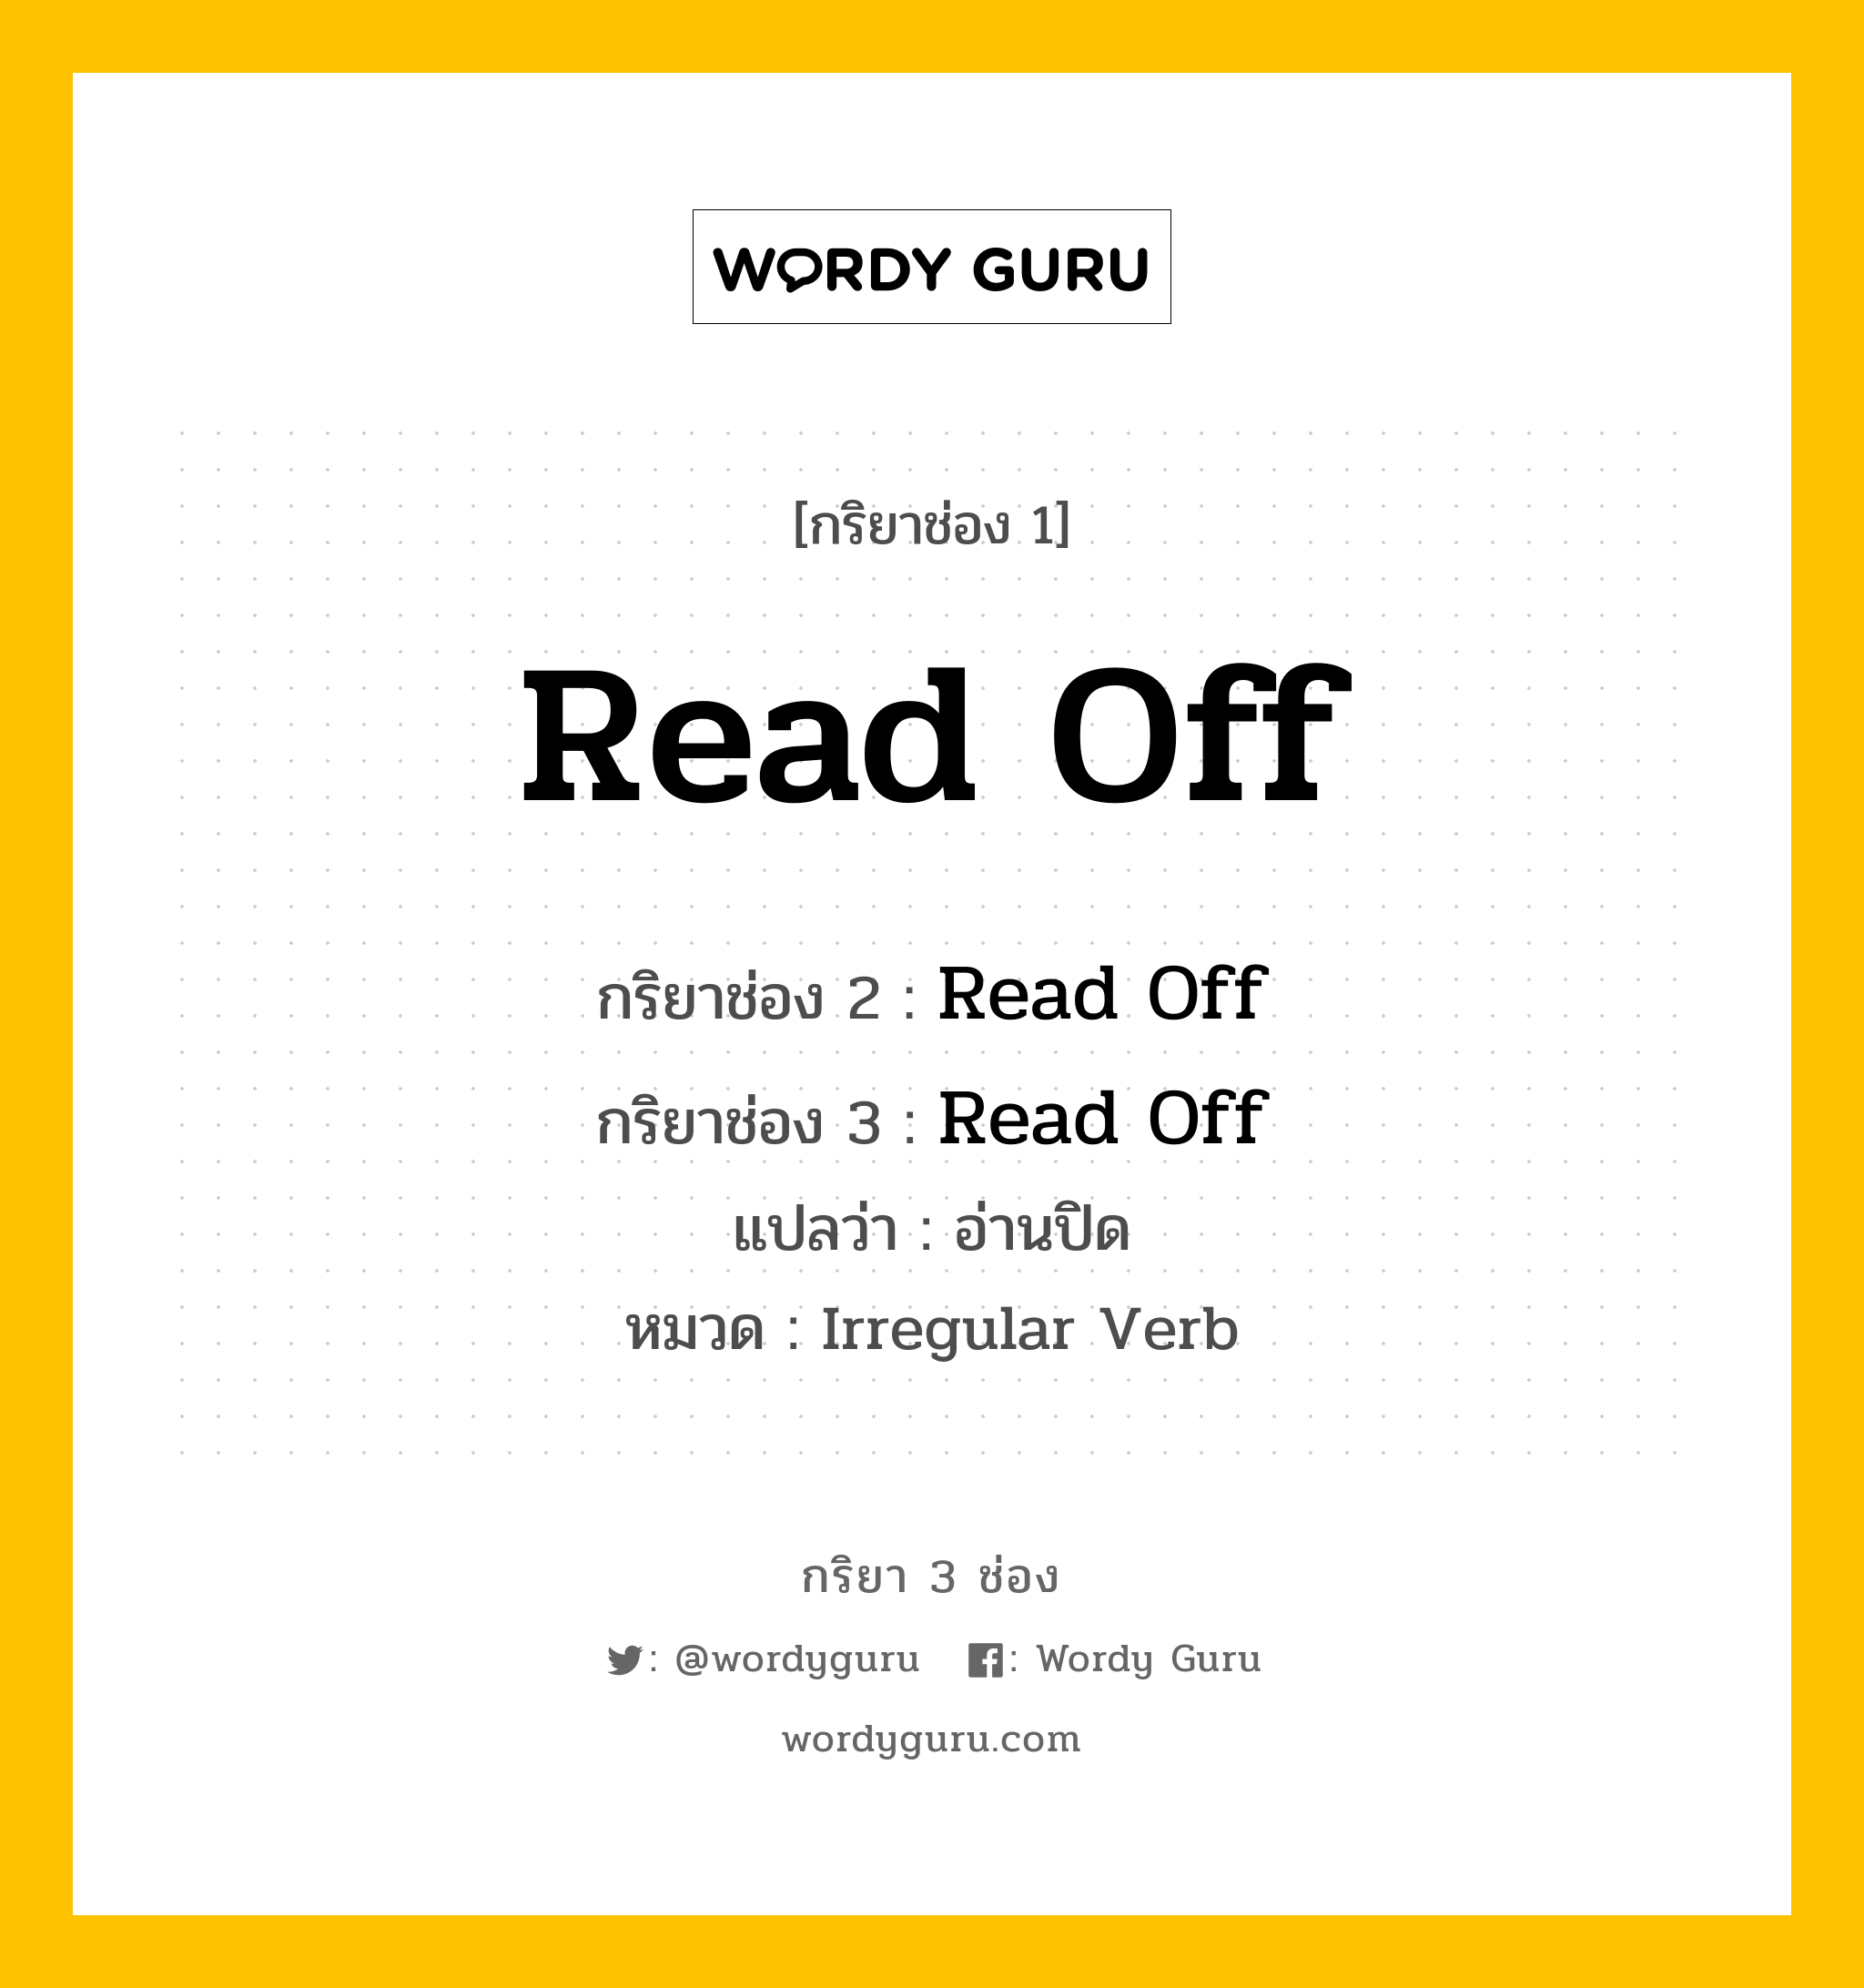 กริยา 3 ช่อง: Read Off ช่อง 2 Read Off ช่อง 3 คืออะไร, กริยาช่อง 1 Read Off กริยาช่อง 2 Read Off กริยาช่อง 3 Read Off แปลว่า อ่านปิด หมวด Irregular Verb หมวด Irregular Verb